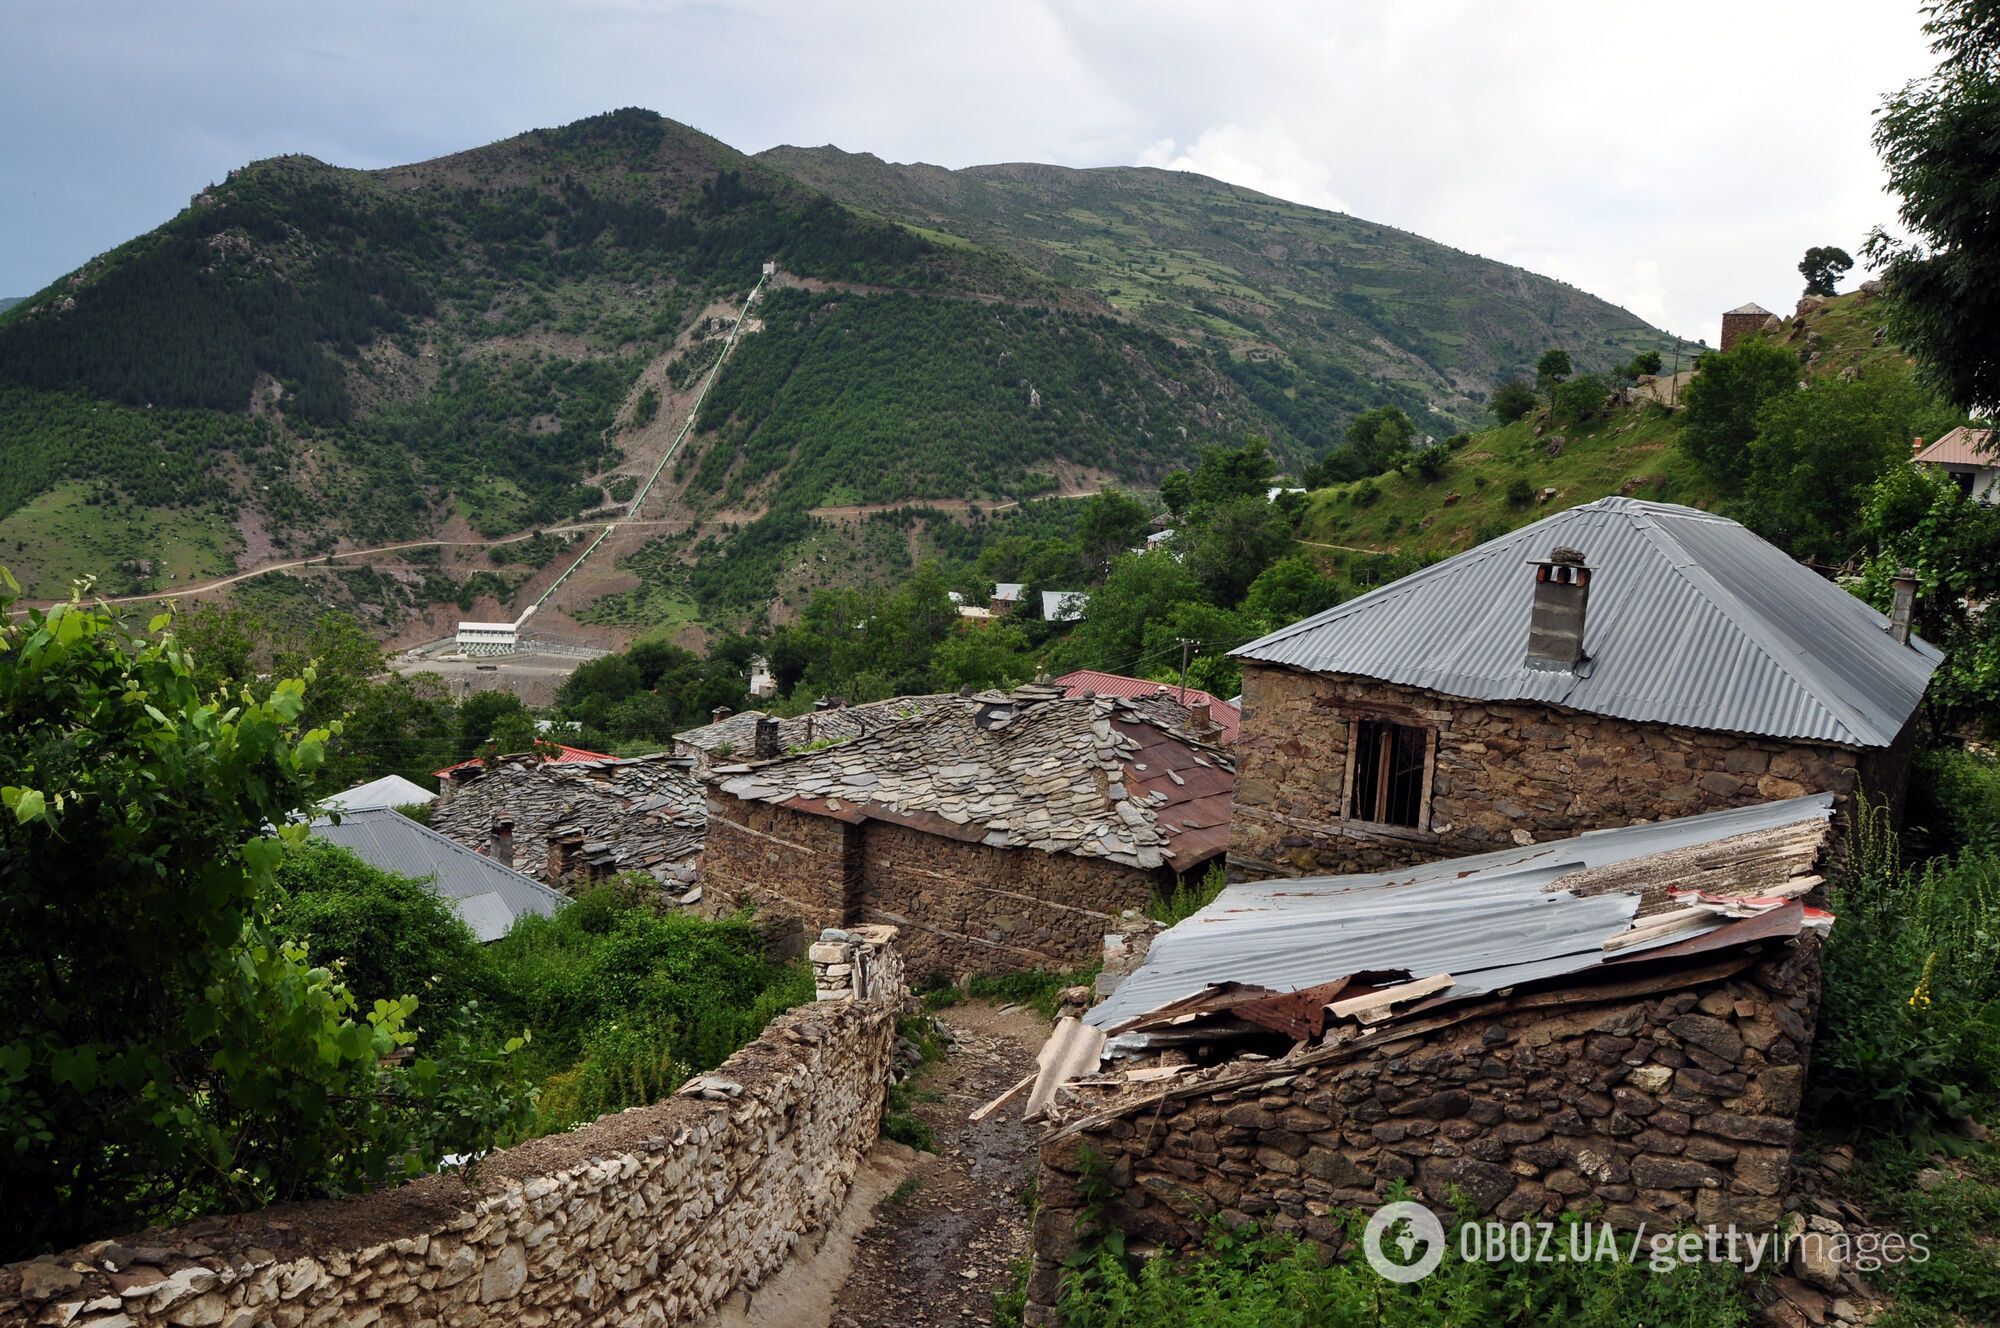 Как выглядит Кукес – один из самых бедных городов Албании, откуда массово убегает молодежь. Власть готова платить людям деньги за возвращение